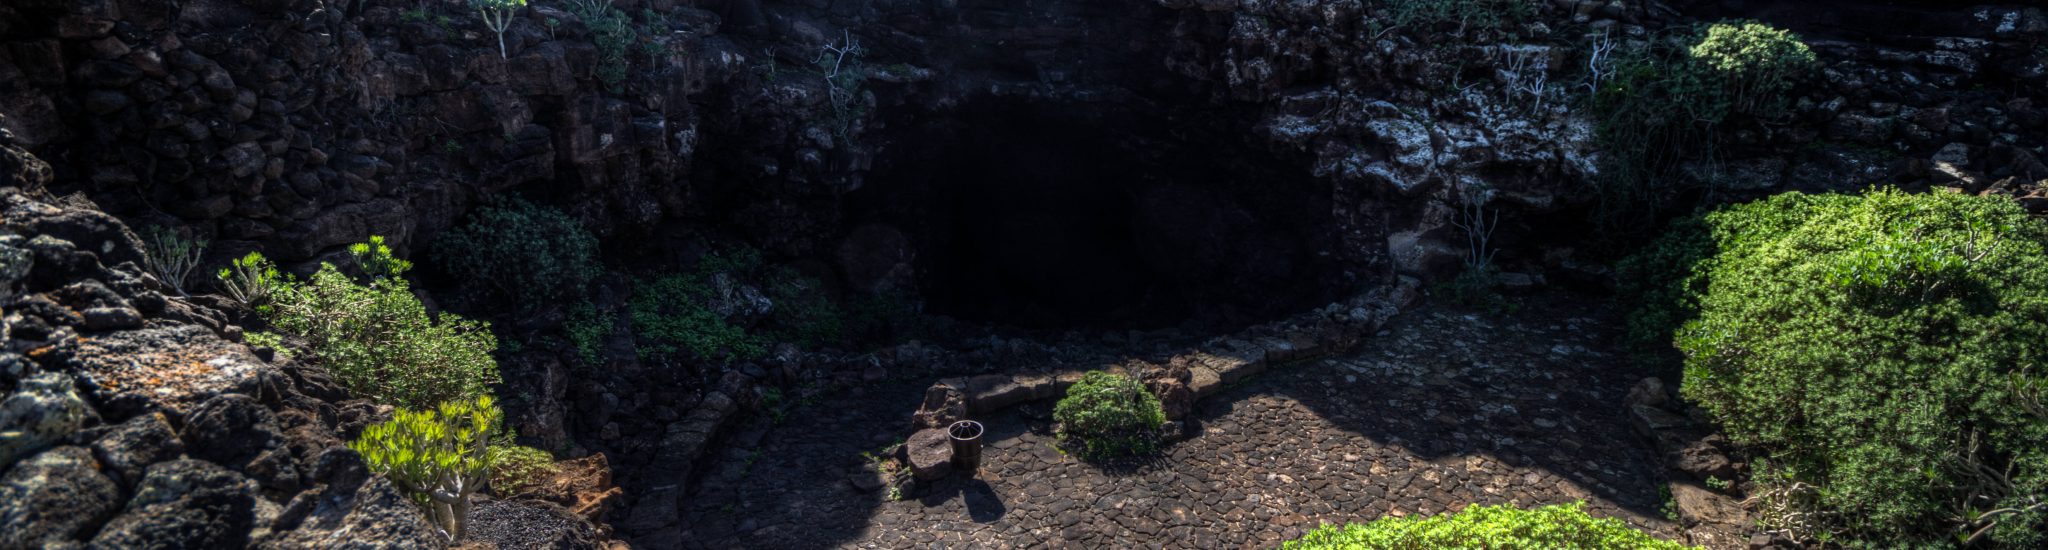 Mogroach Travelblog Cueva de los Verdes Lanzarote